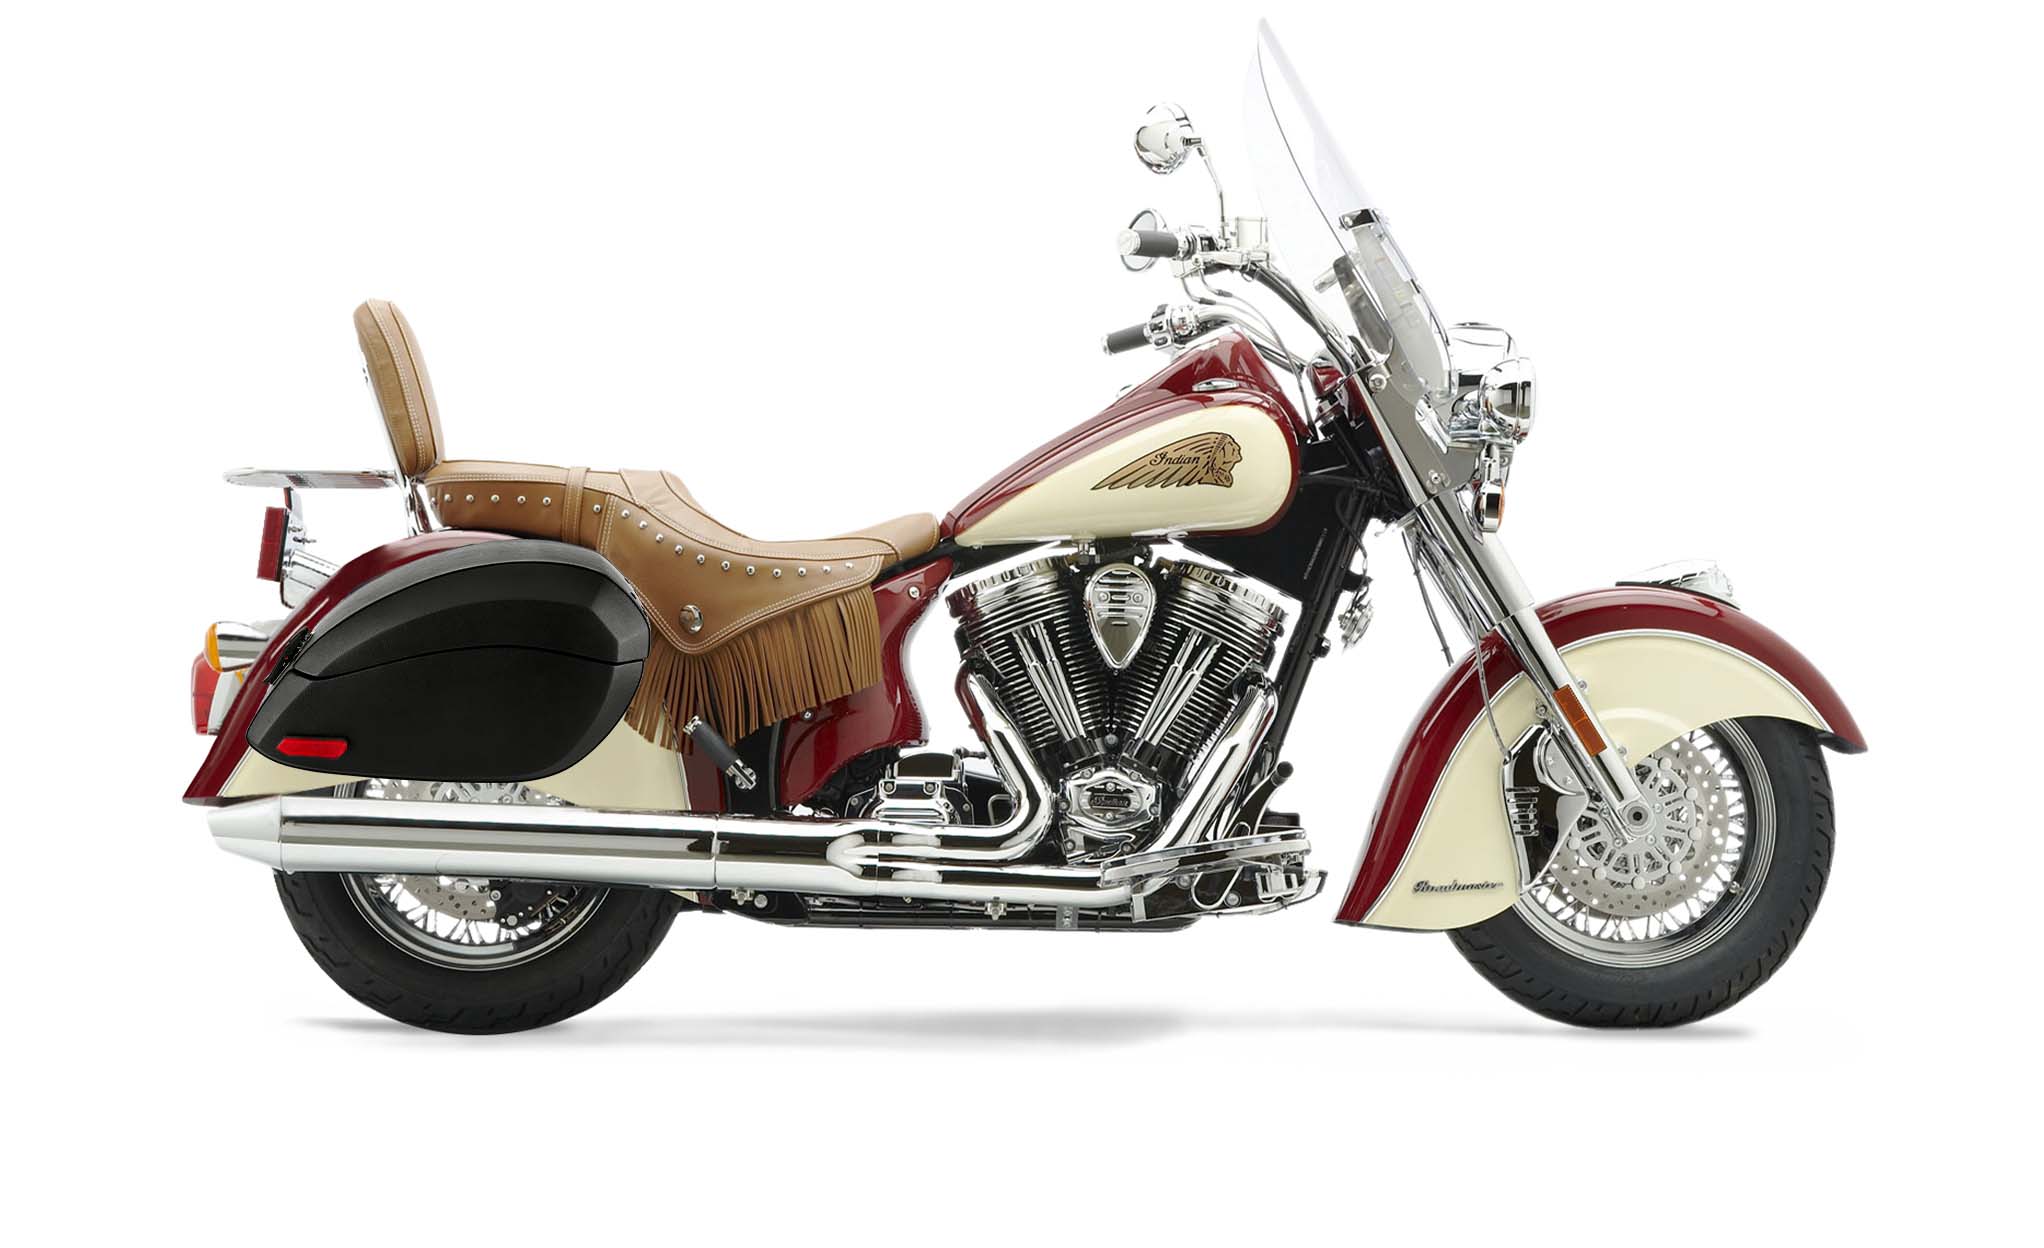 Viking Phantom Large Indian Chief Roadmaster Leather Wrapped Motorcycle Hard Saddlebags on Bike Photo @expand